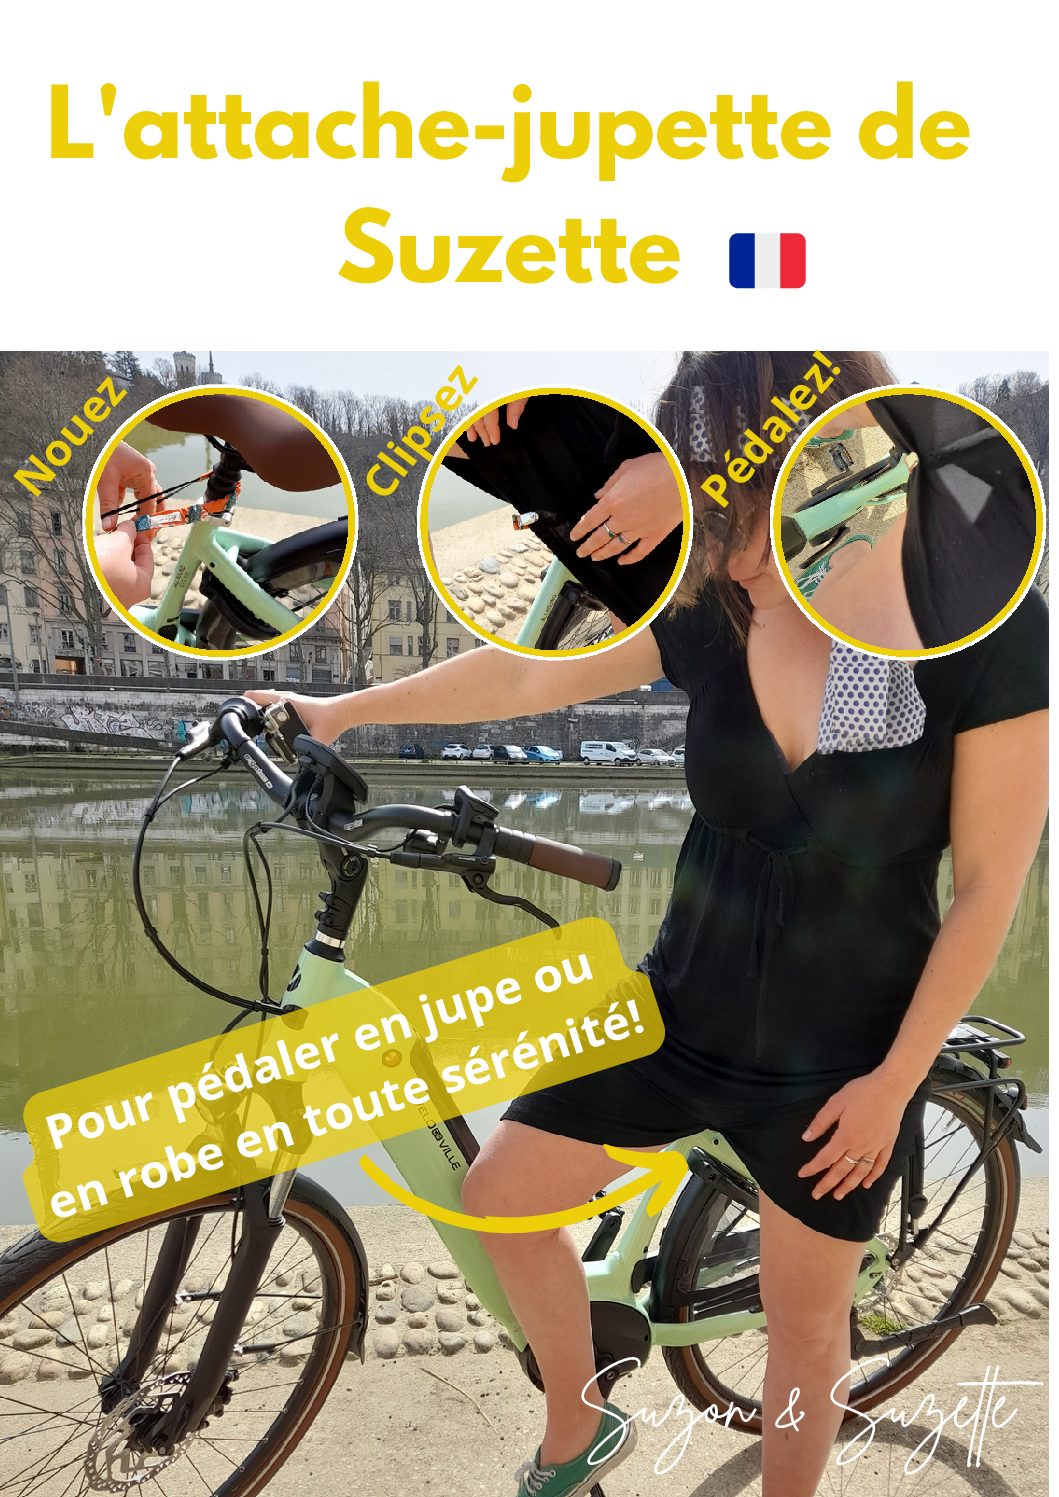 L'attache jupette / jupe de Suzette : sereine à vélo en jupe ou robe